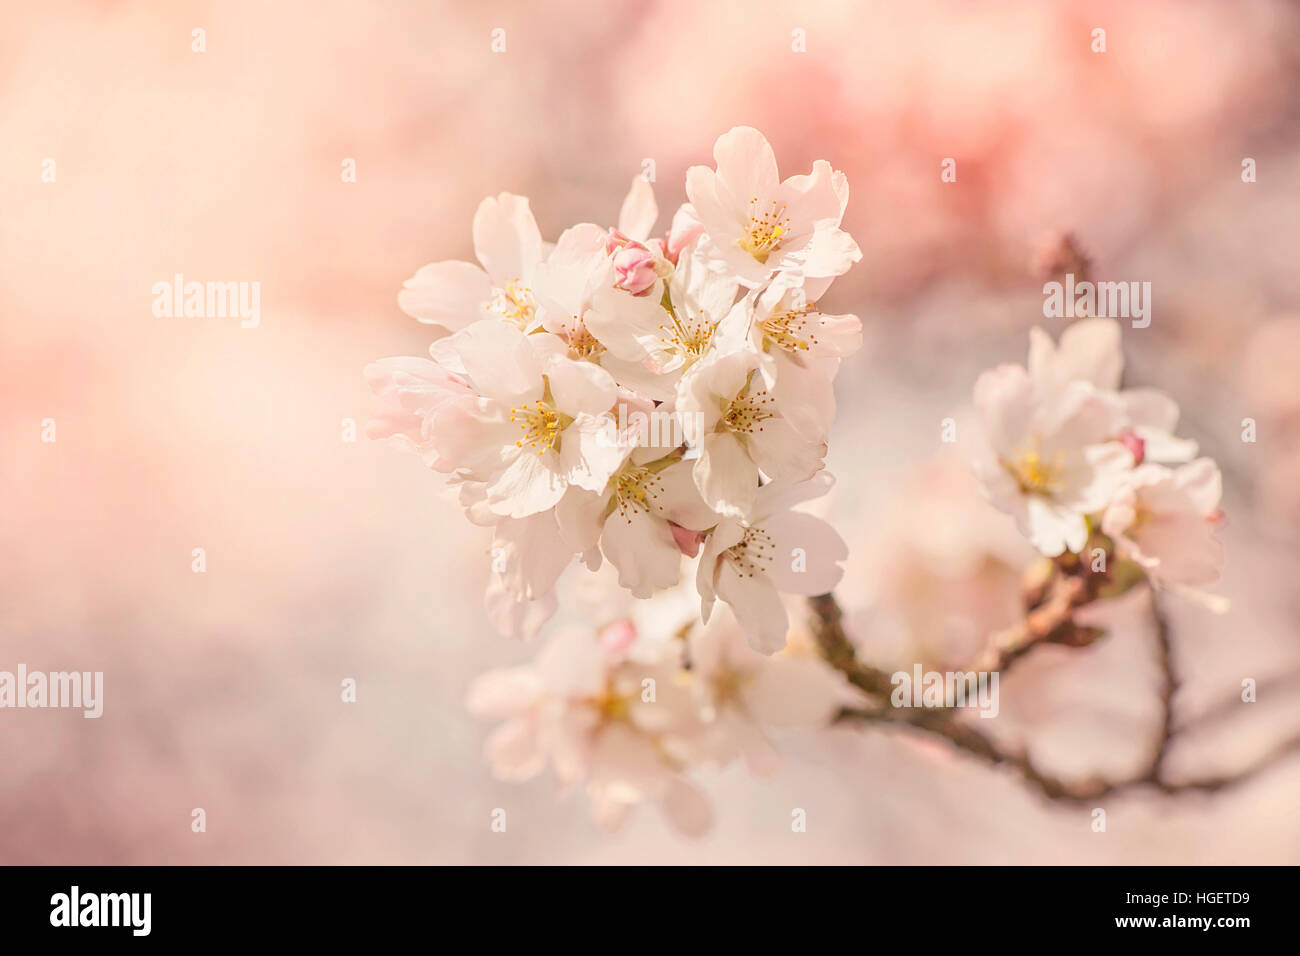 Image en gros plan de la délicate fleur rose printemps fleurs de la Japanese flowering cherry tree. Banque D'Images